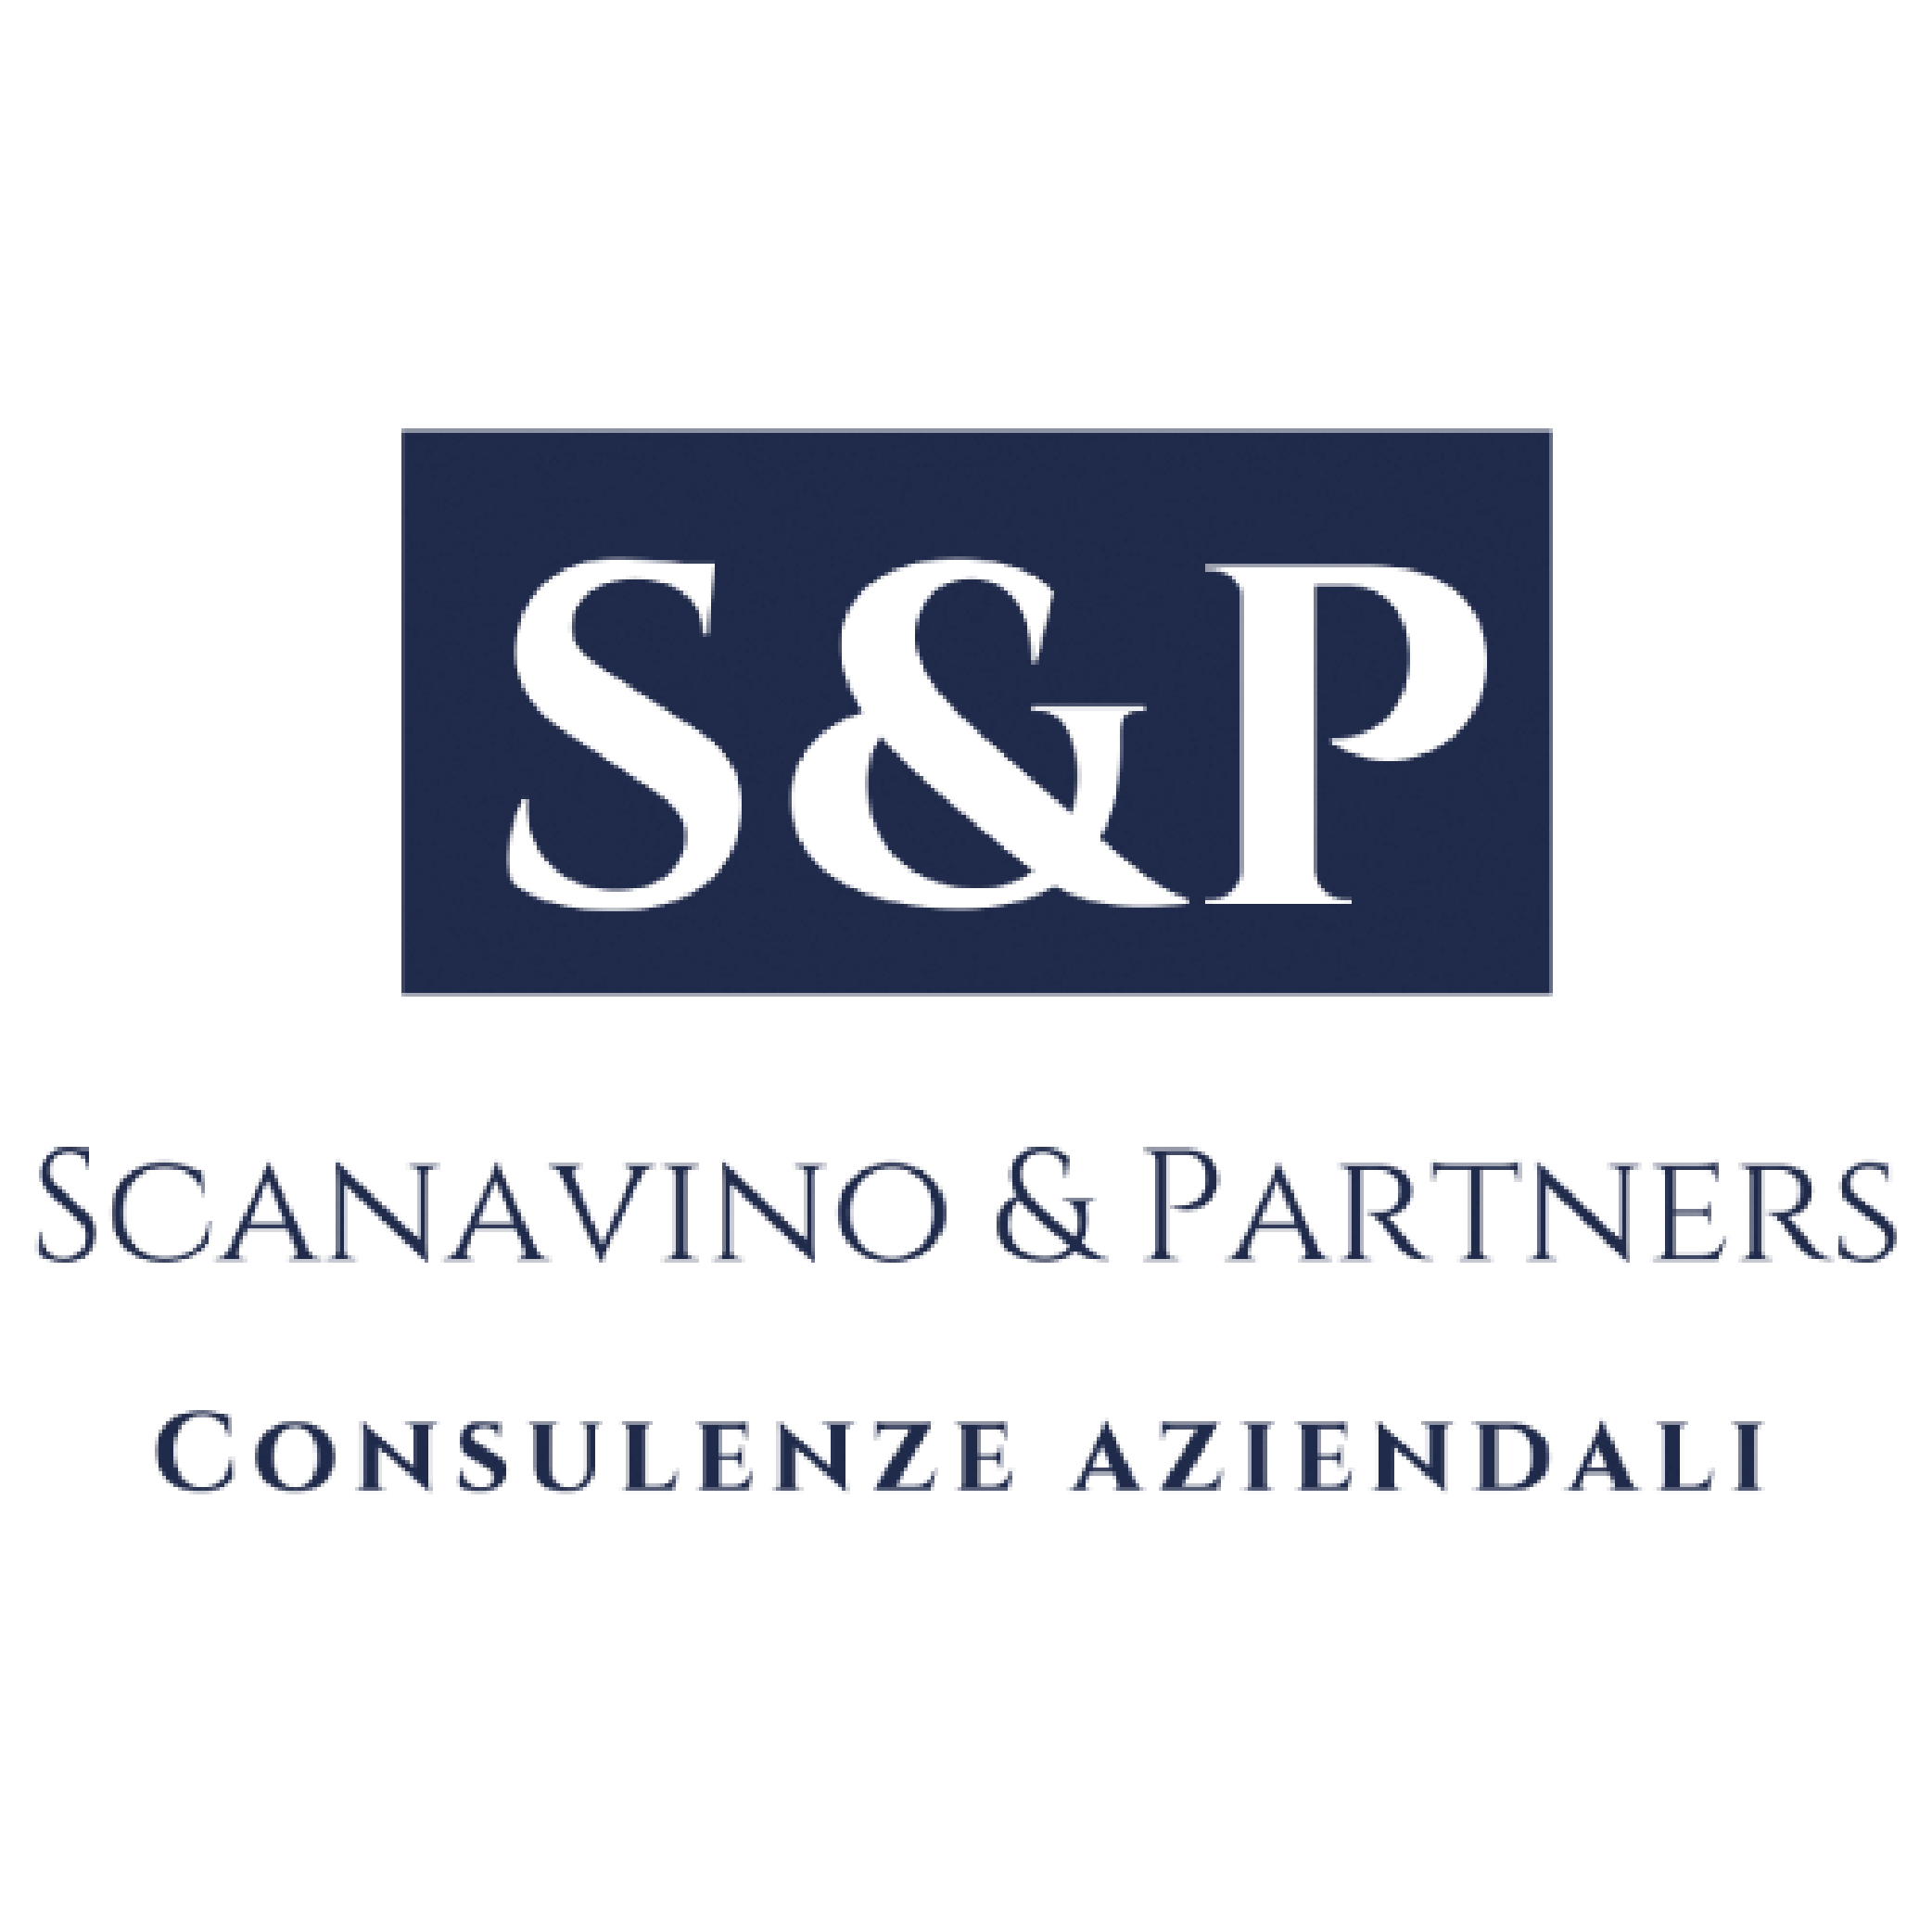 Scanavino e Partners, azienda leader nella consulenza aziendale, è nostro cliente per la realizzazione e manutenzione del sito web.